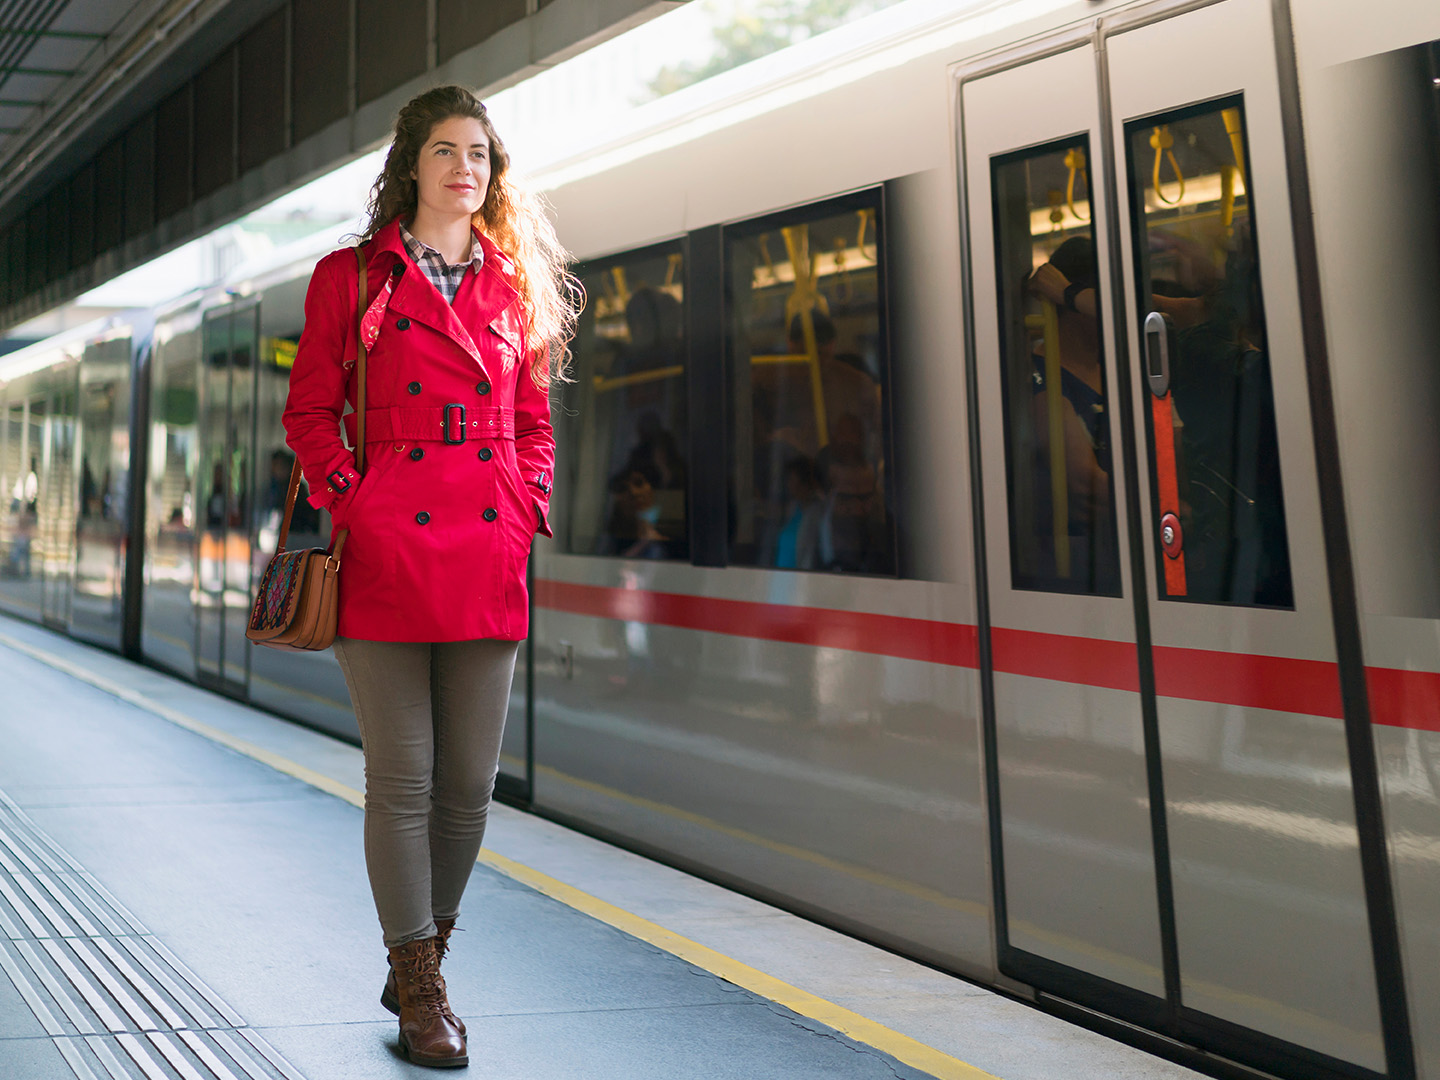 Foto: Frau in roter Jacke geht am U-Bahnsteig